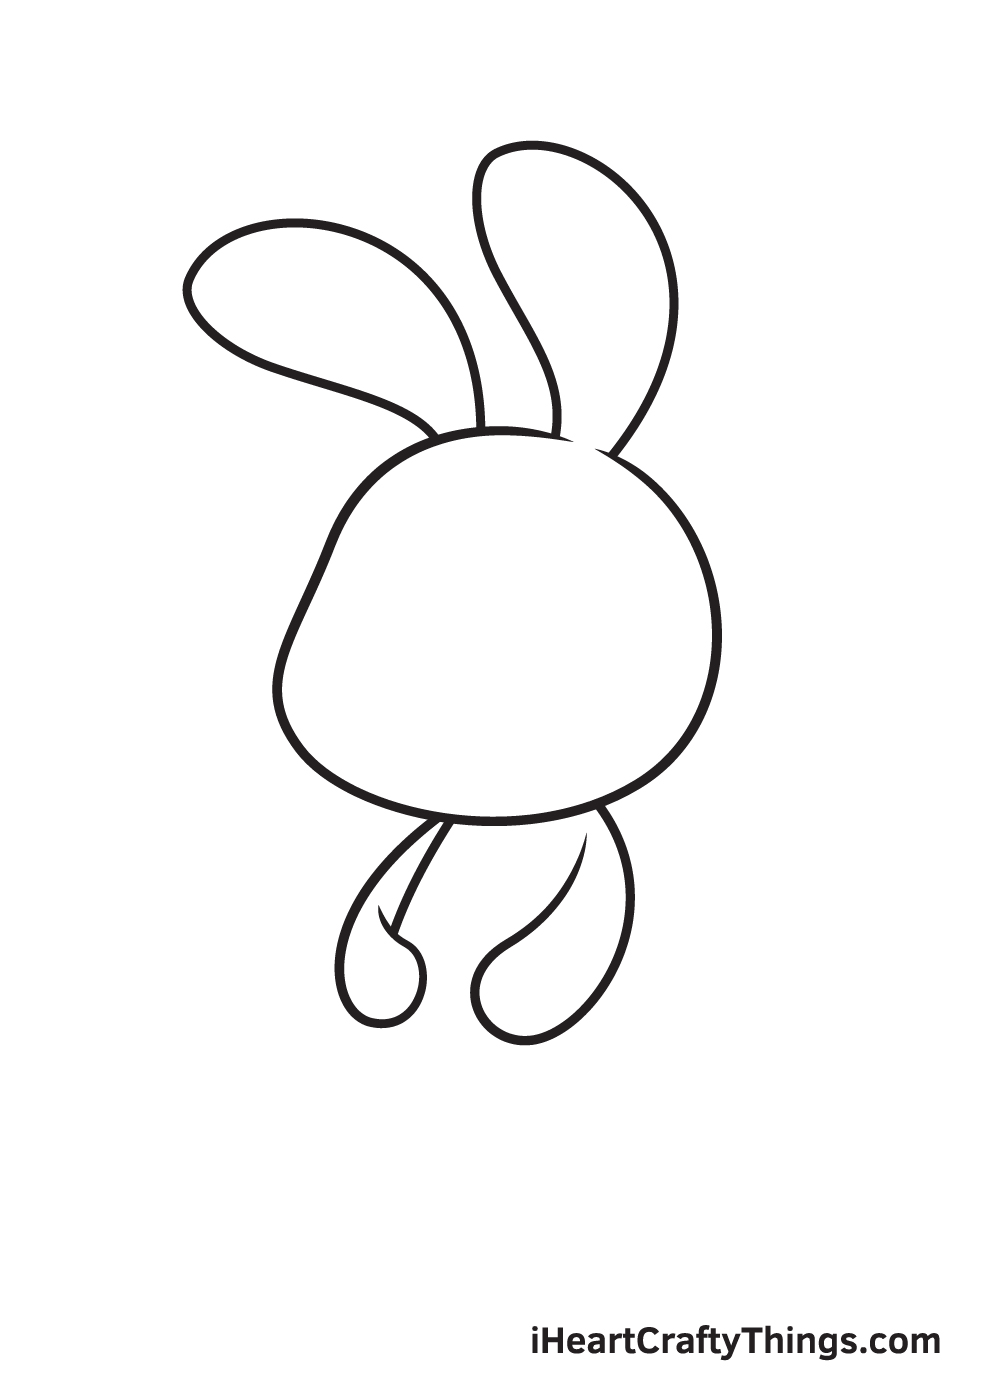 Vẽ chú thỏ - Bước 3